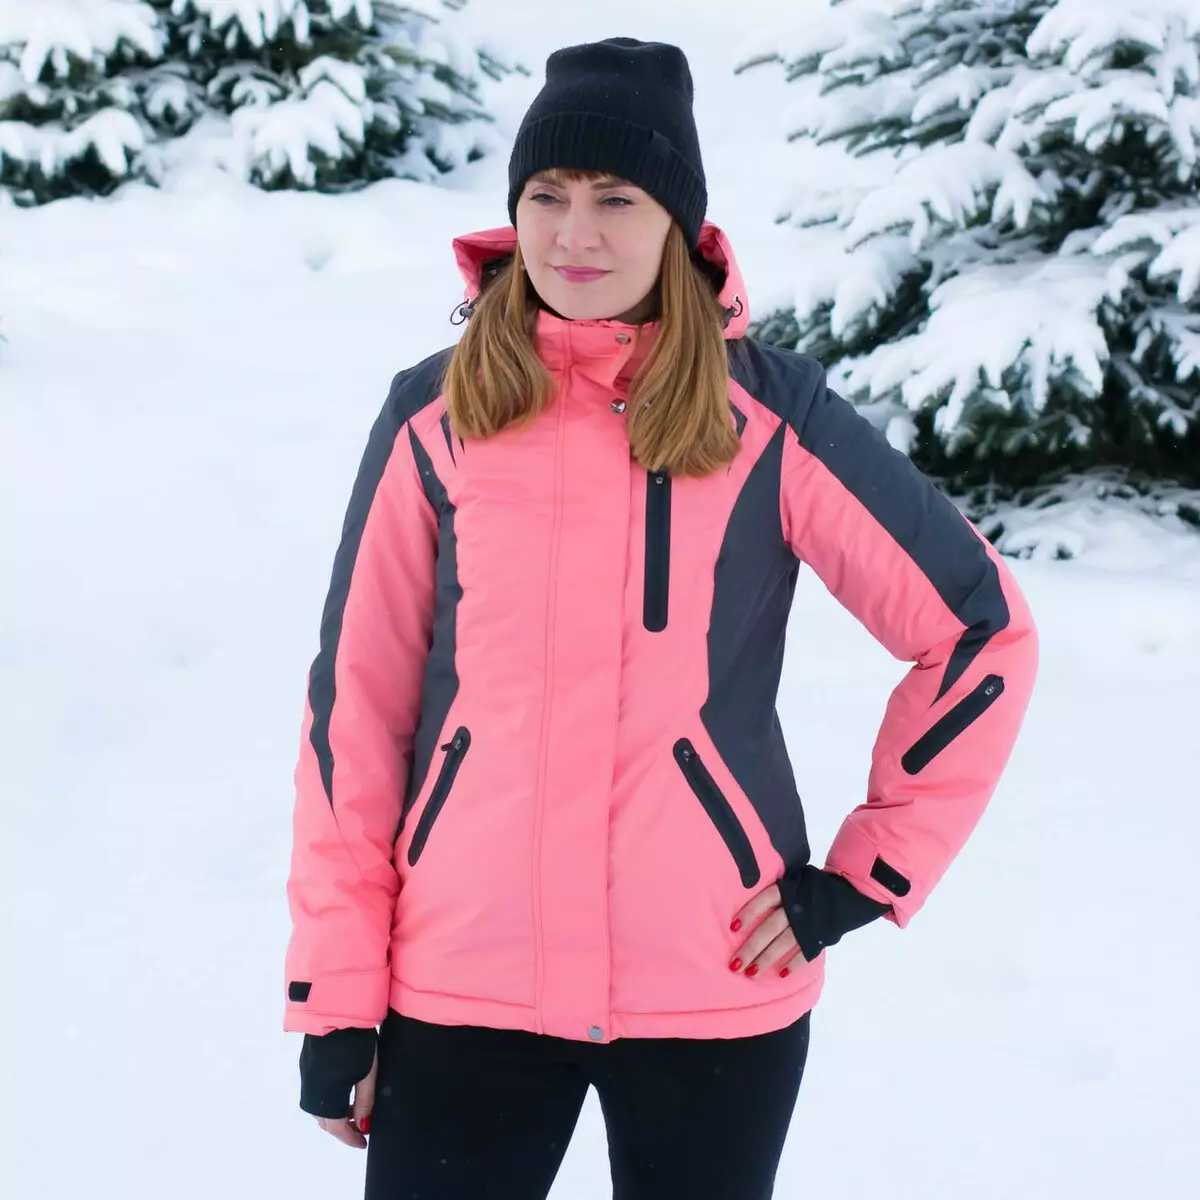 Skidjacka: Women's Winter Jacket för längdskidåkning, uppvärmning av barn och vuxna skidåkare. Hur man väljer för skridskoåkning? 20201_36